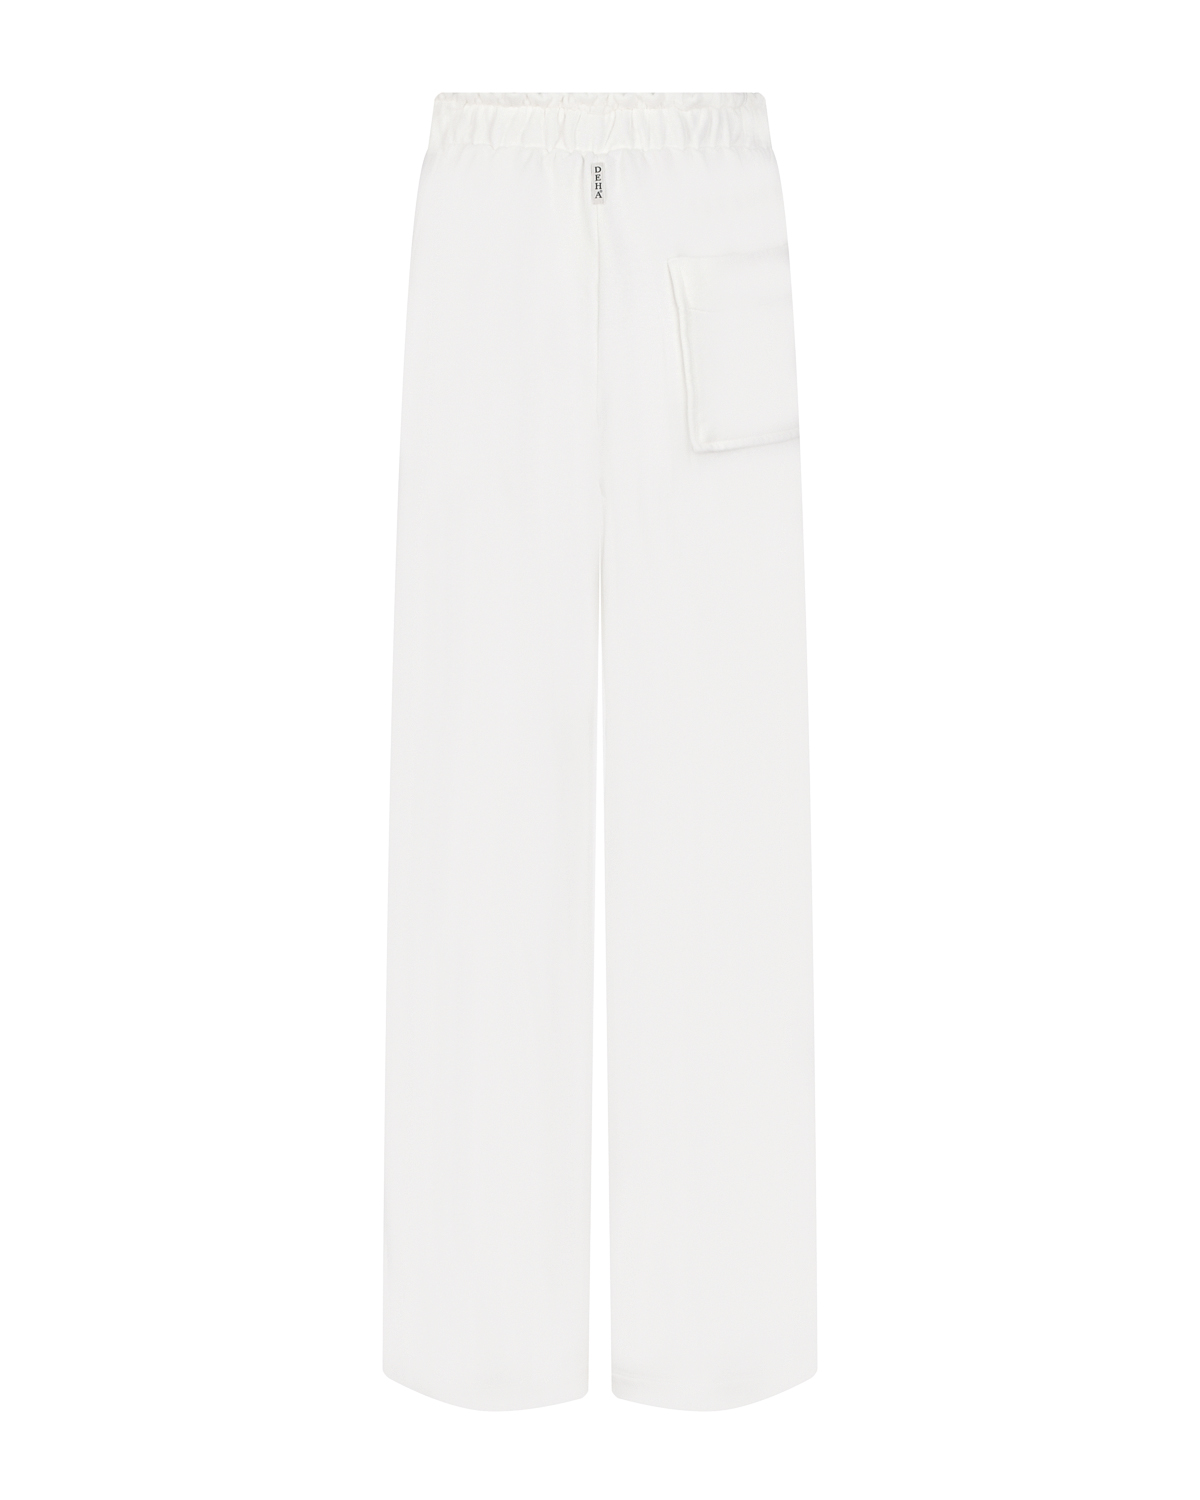 Белые спортивные брюки Deha, размер 42, цвет белый - фото 5